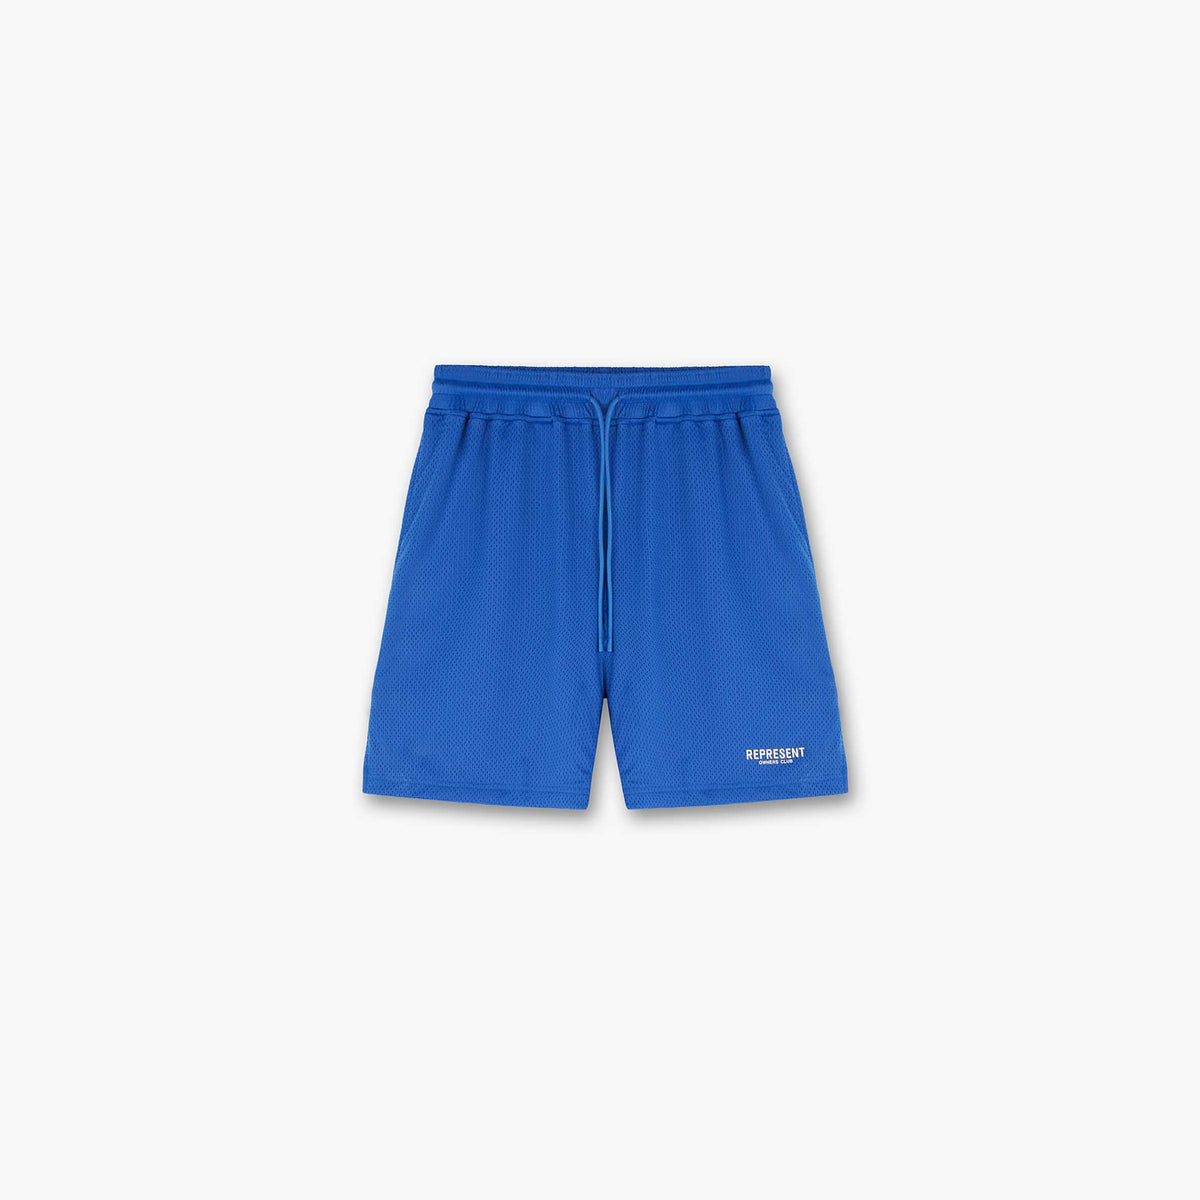 Represent Owners Club Mesh Shorts | Cobalt Shorts | REPRESENT CLO